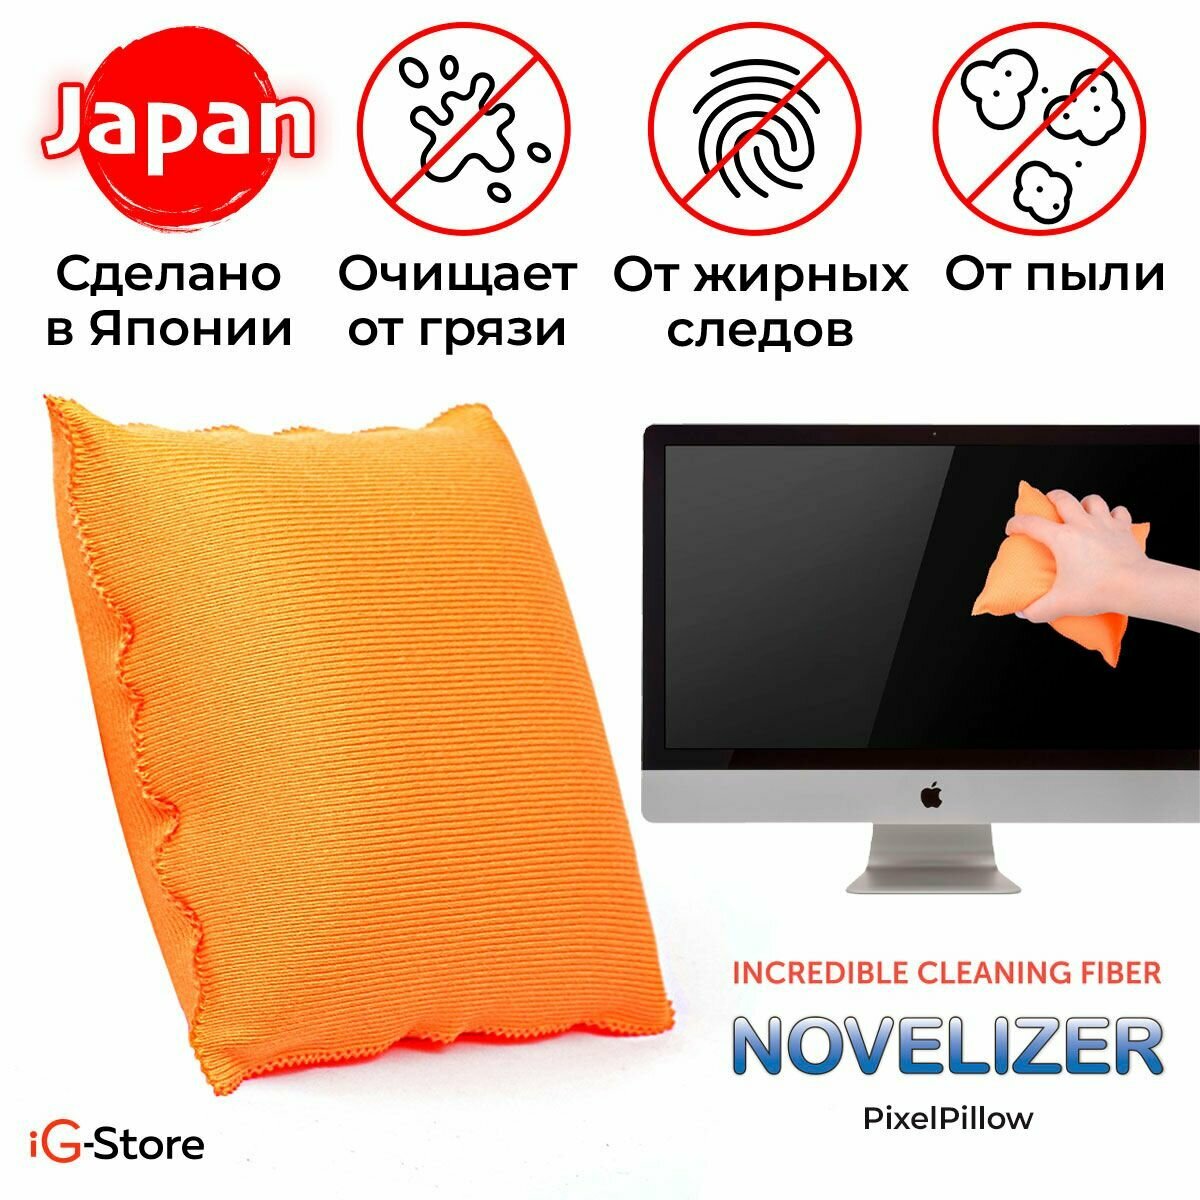 Салфетка-подушка для уборки PixelPillow из японского микроволокна Novelizer для очистки экранов телевизора монитора ноутбука планшета зеркал стекол глянцевых поверхностей из микрофибры многоразовая